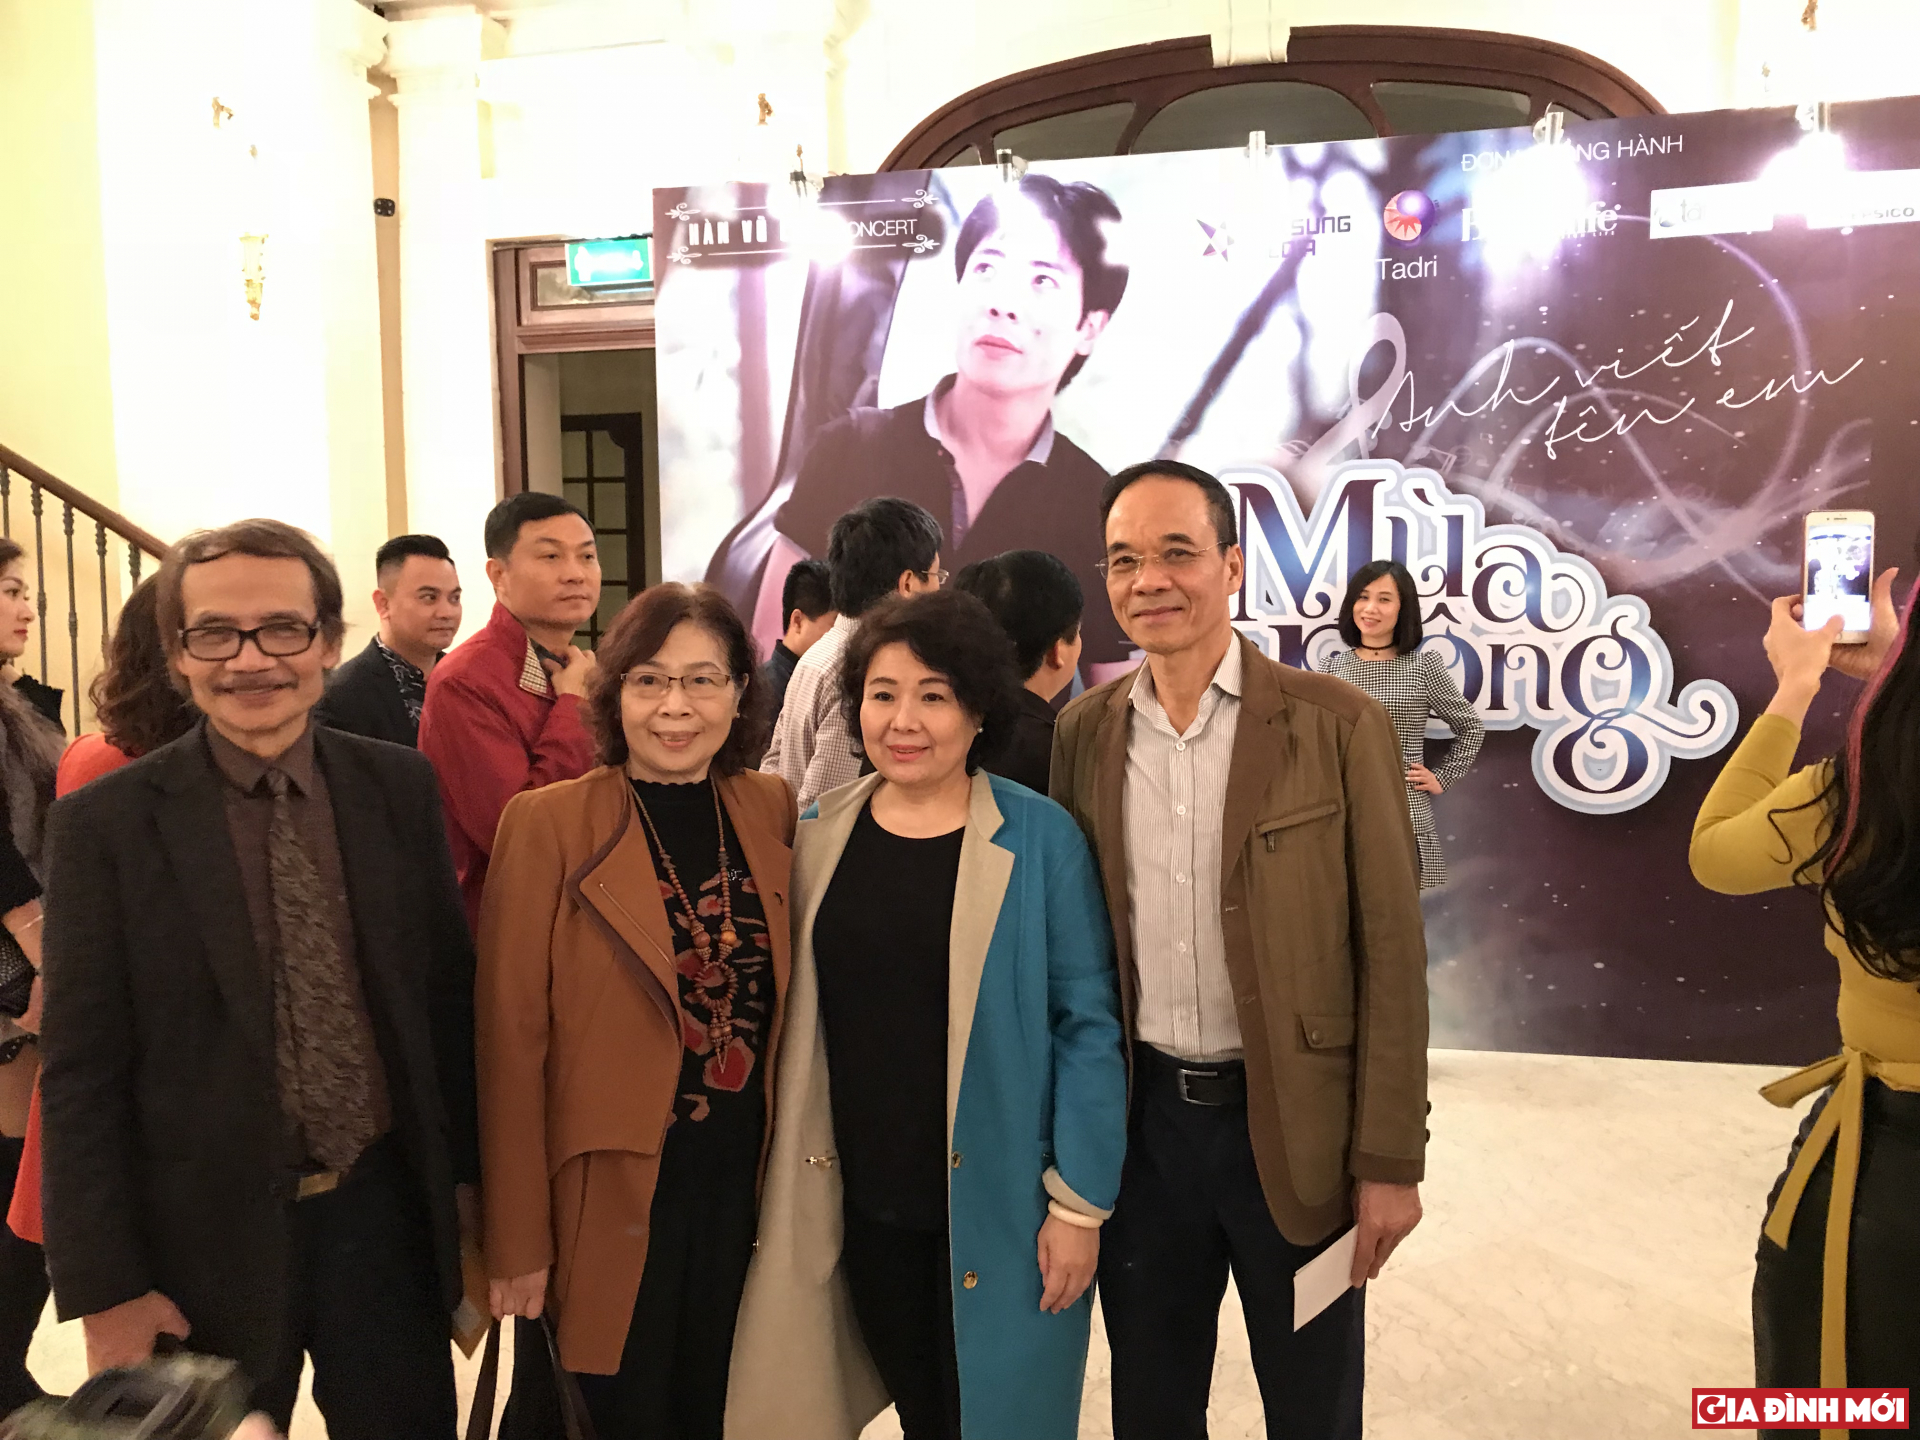 Giáo sư Lê Cảnh Khanh, Giáo sư- Tiến sĩ Lê Thị Quý cùng những người bạn trong đêm nhạc ‘Anh viết tên em mùa đông’